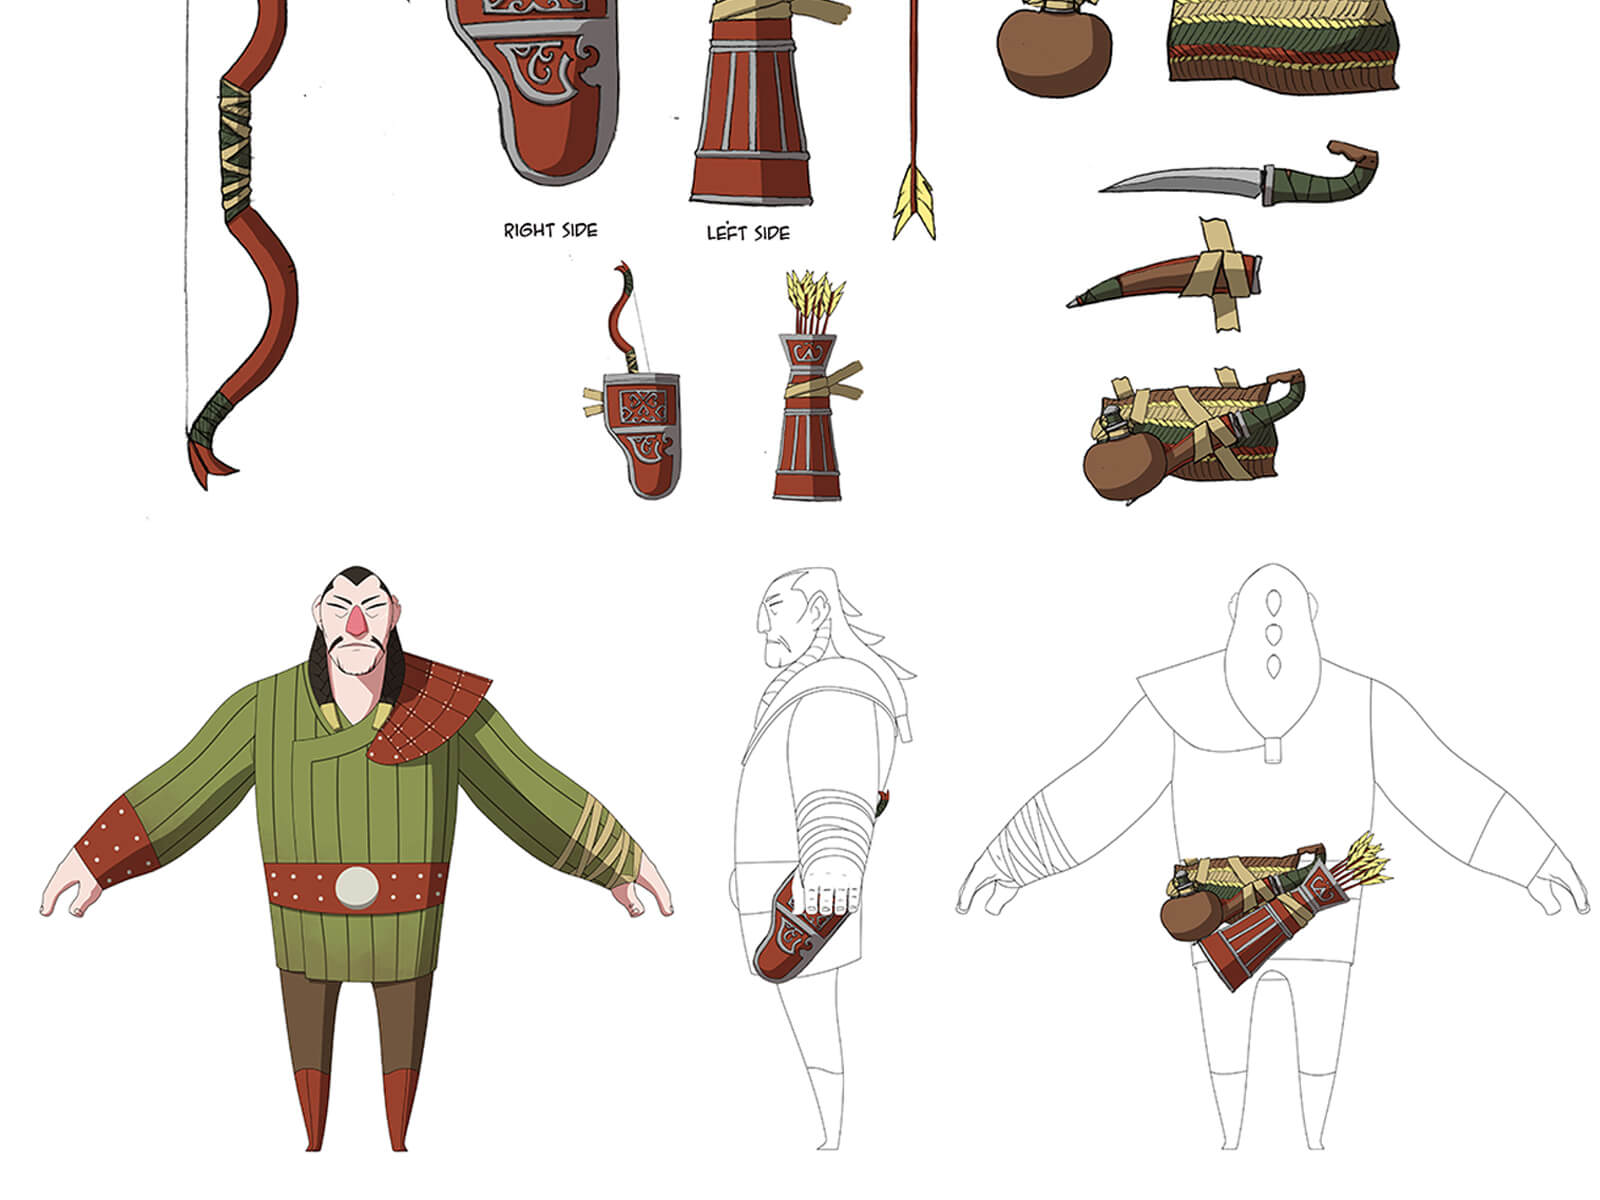 Boceto en color de un antiguo cazador y su equipo, incluido un arco, unas flechas, un carcaj, un cuchillo y una bolsa de agua.